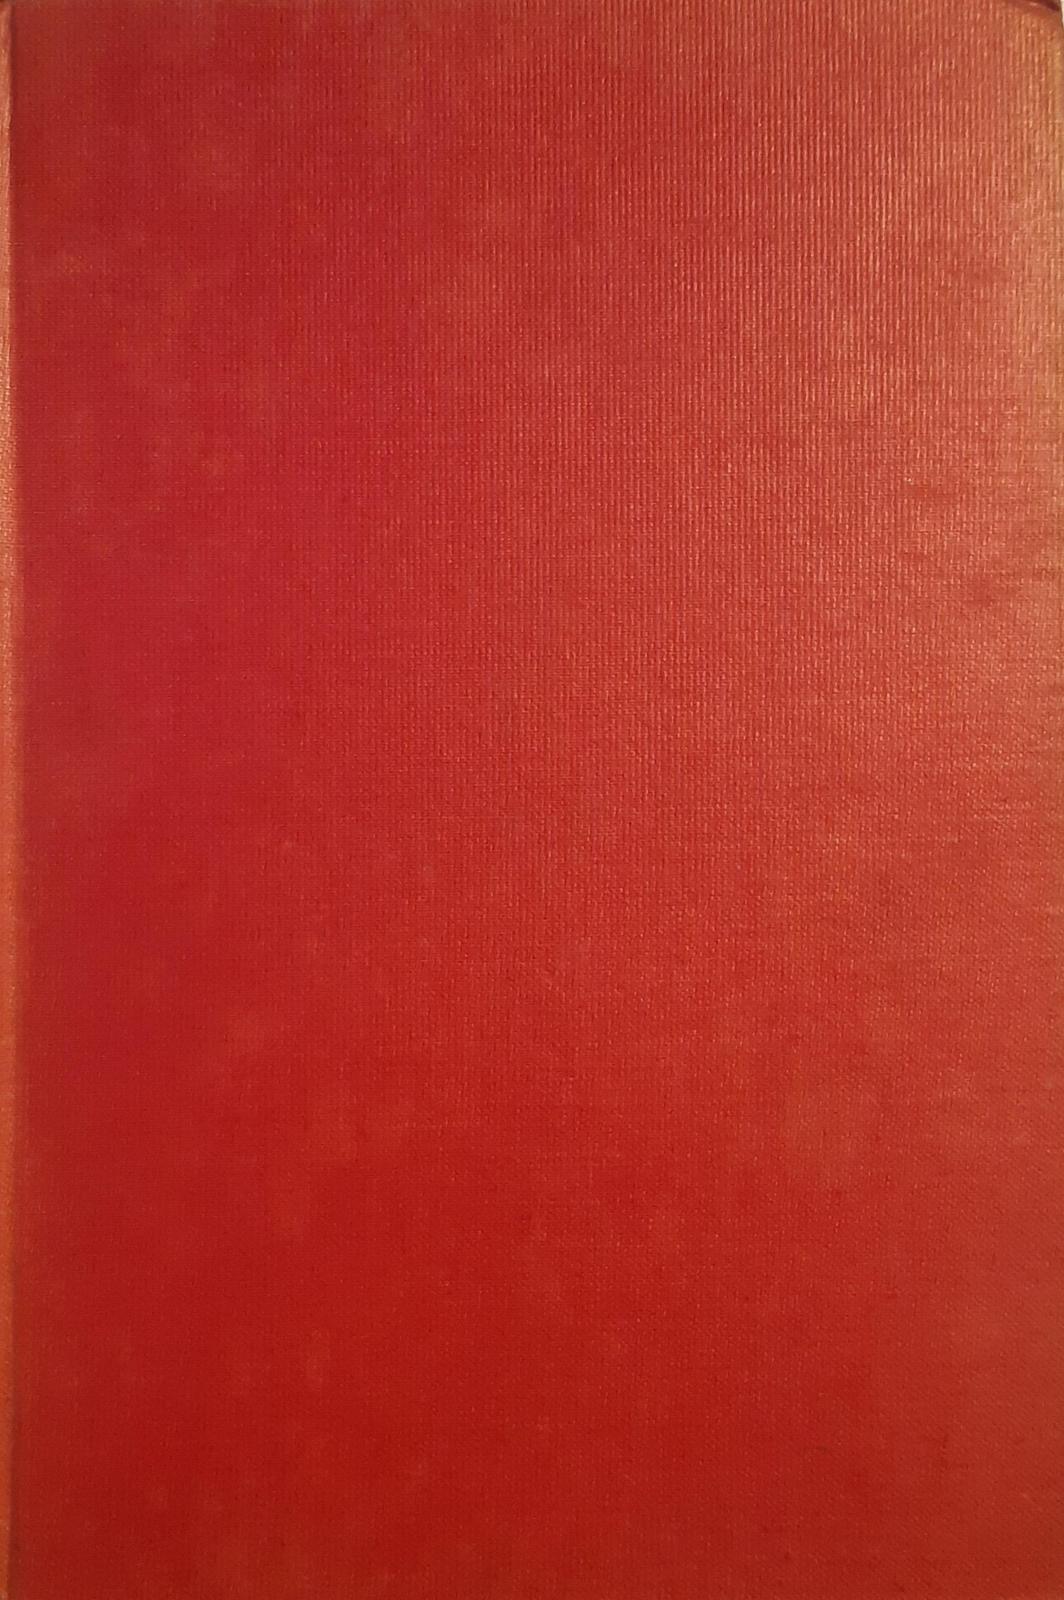 Les Misérables - Partie 1. 1 (1903)